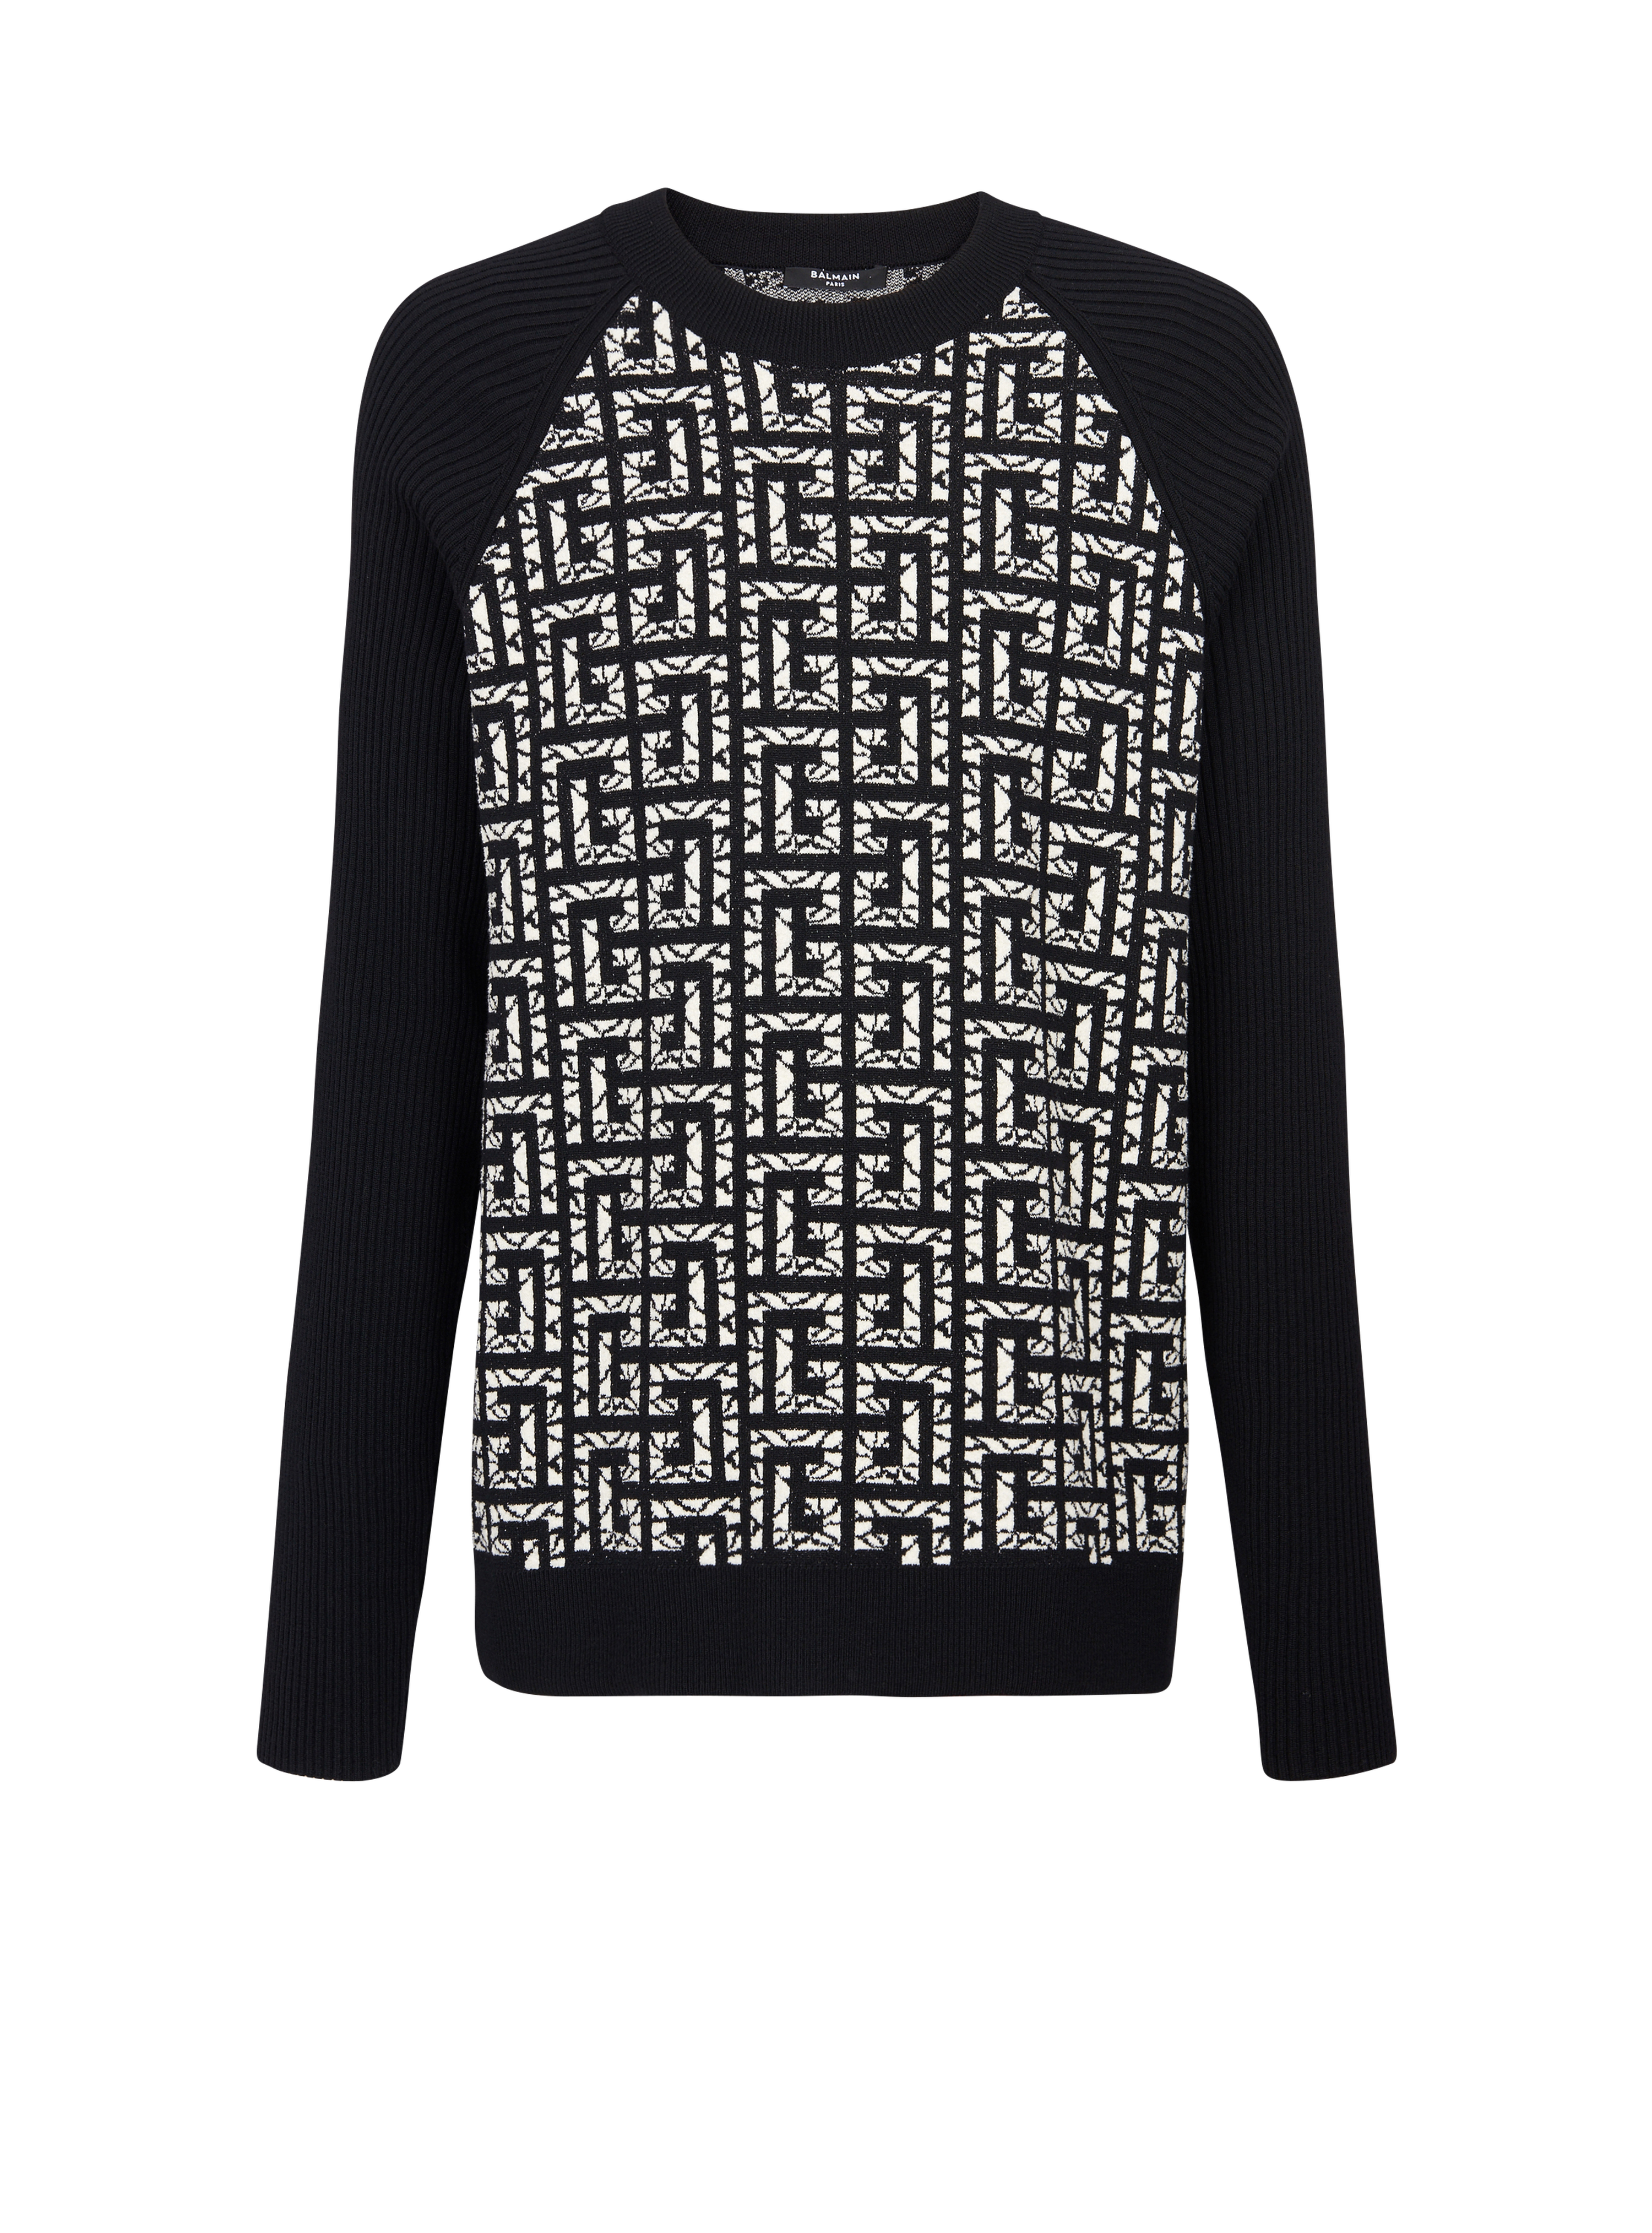 Wool jumper with marbled monogram, black